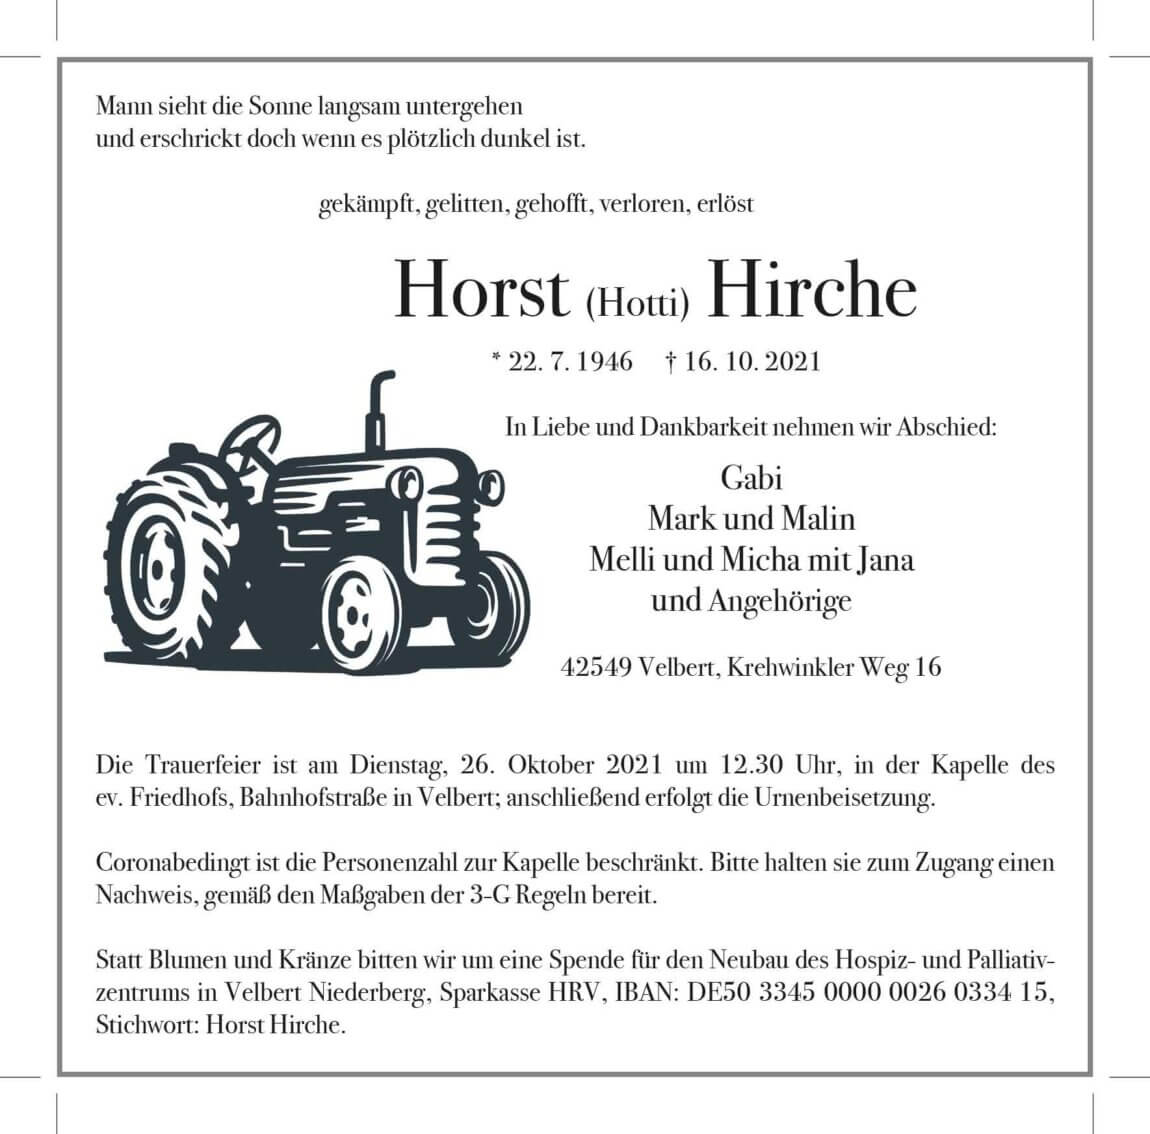 23.10.2021_Hirche-Horst.jpg